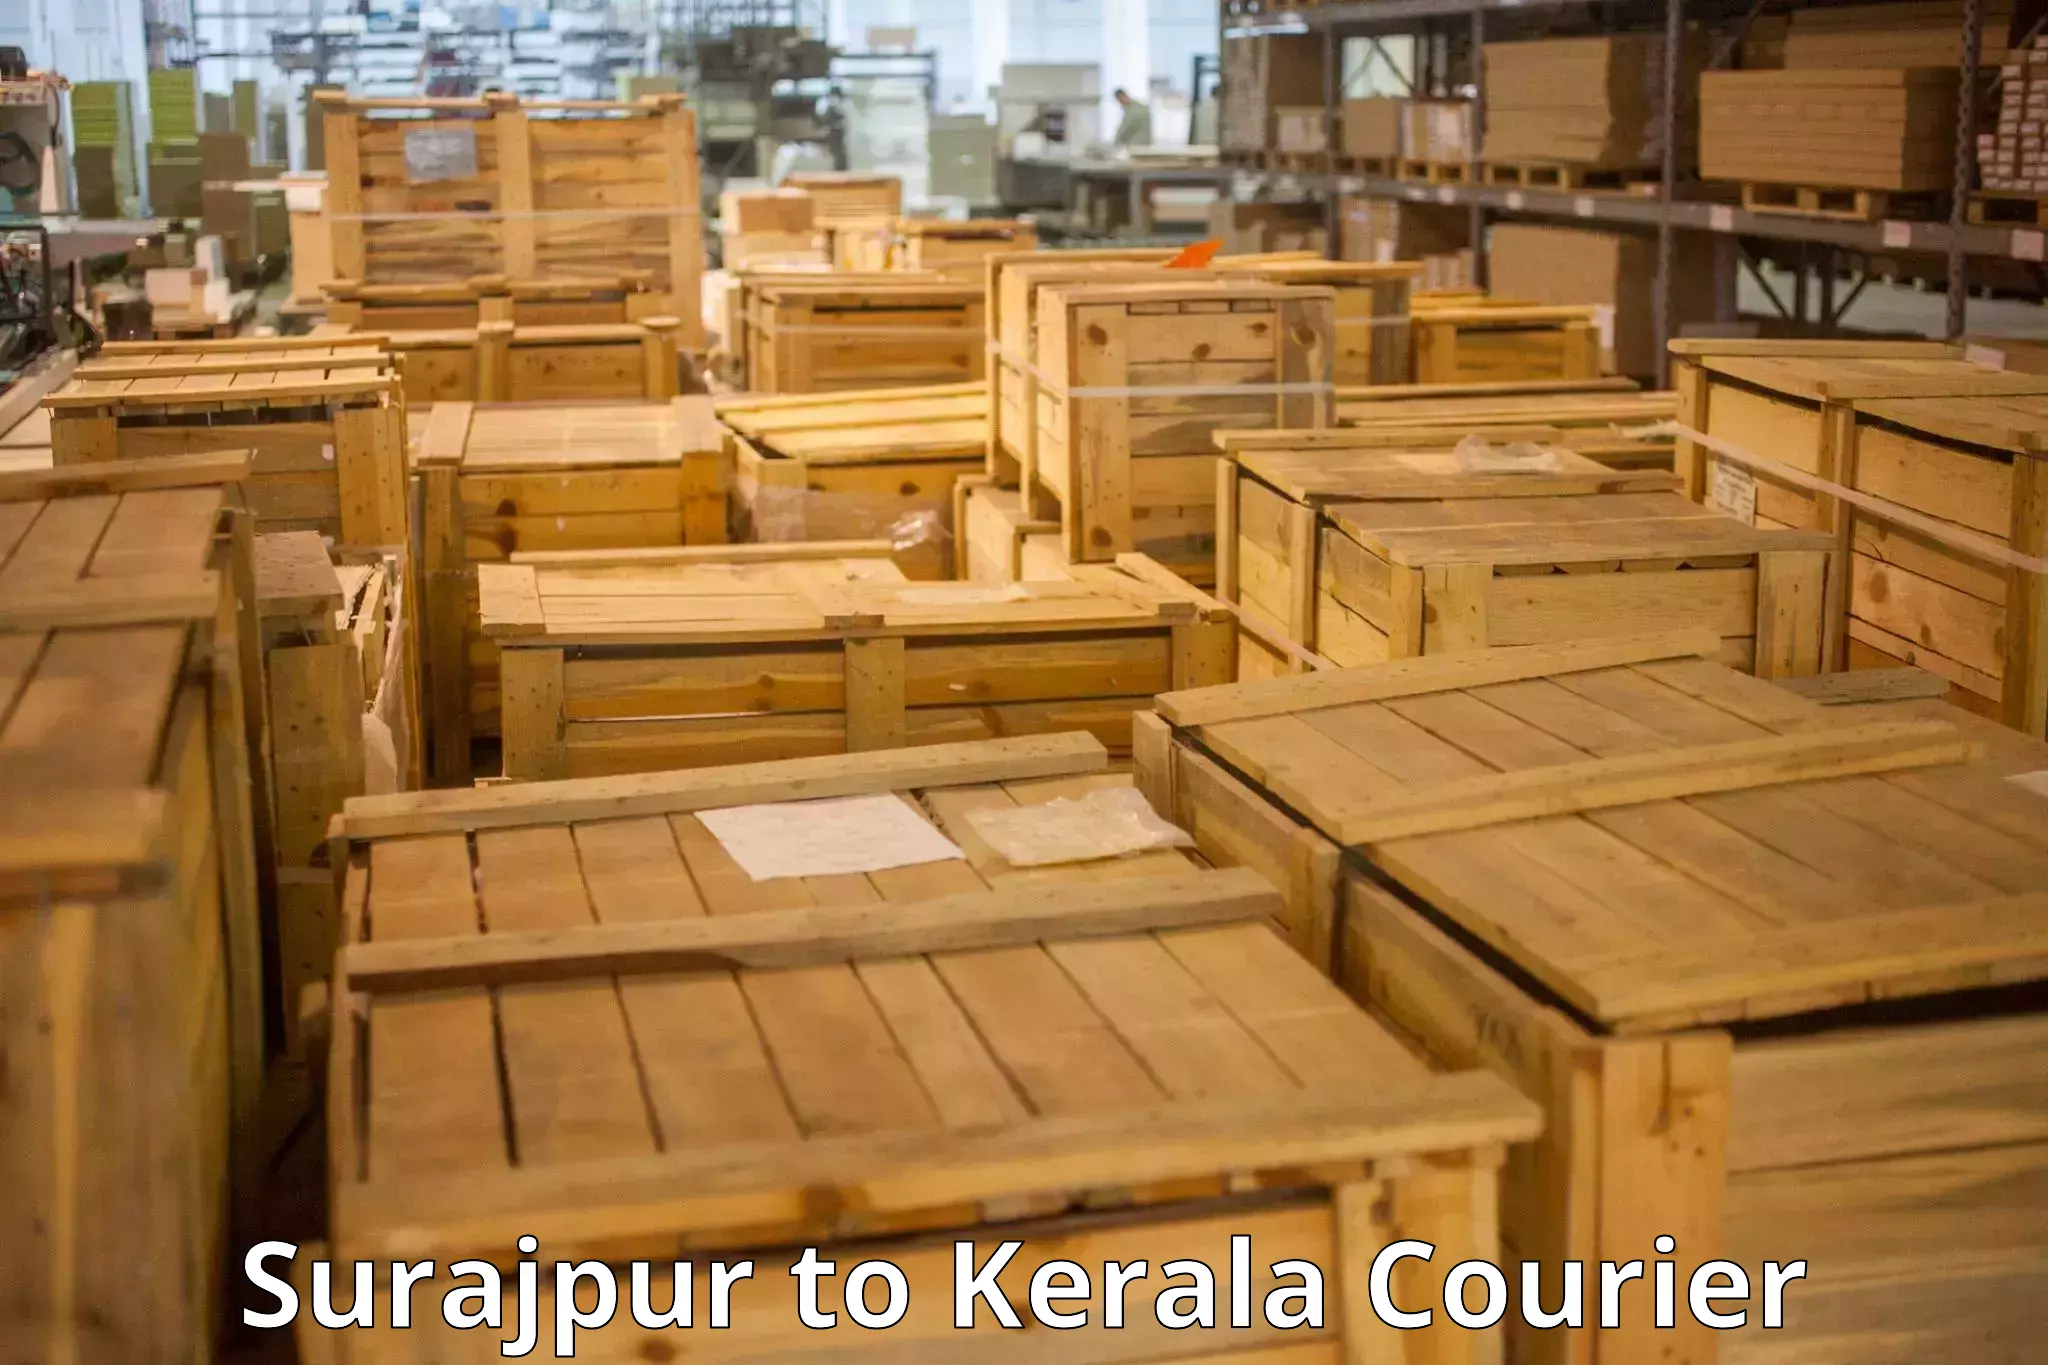 Baggage delivery estimate Surajpur to Kerala